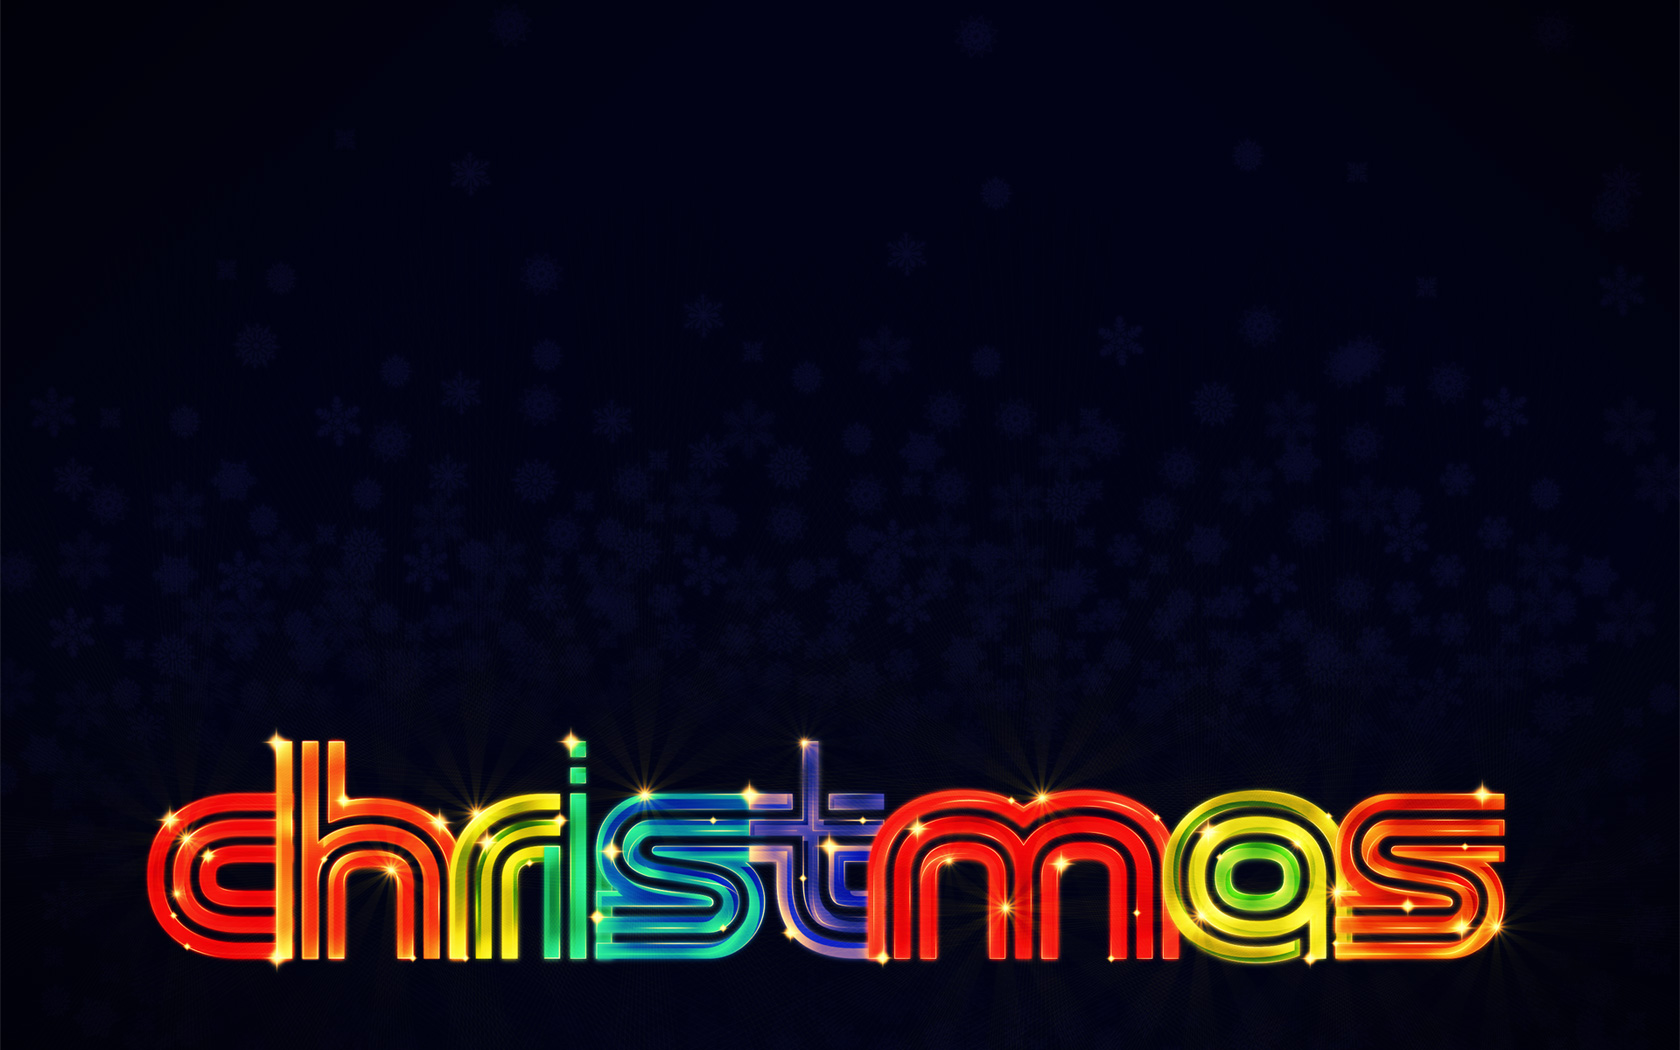 Descarga gratis la imagen Navidad, Día Festivo en el escritorio de tu PC